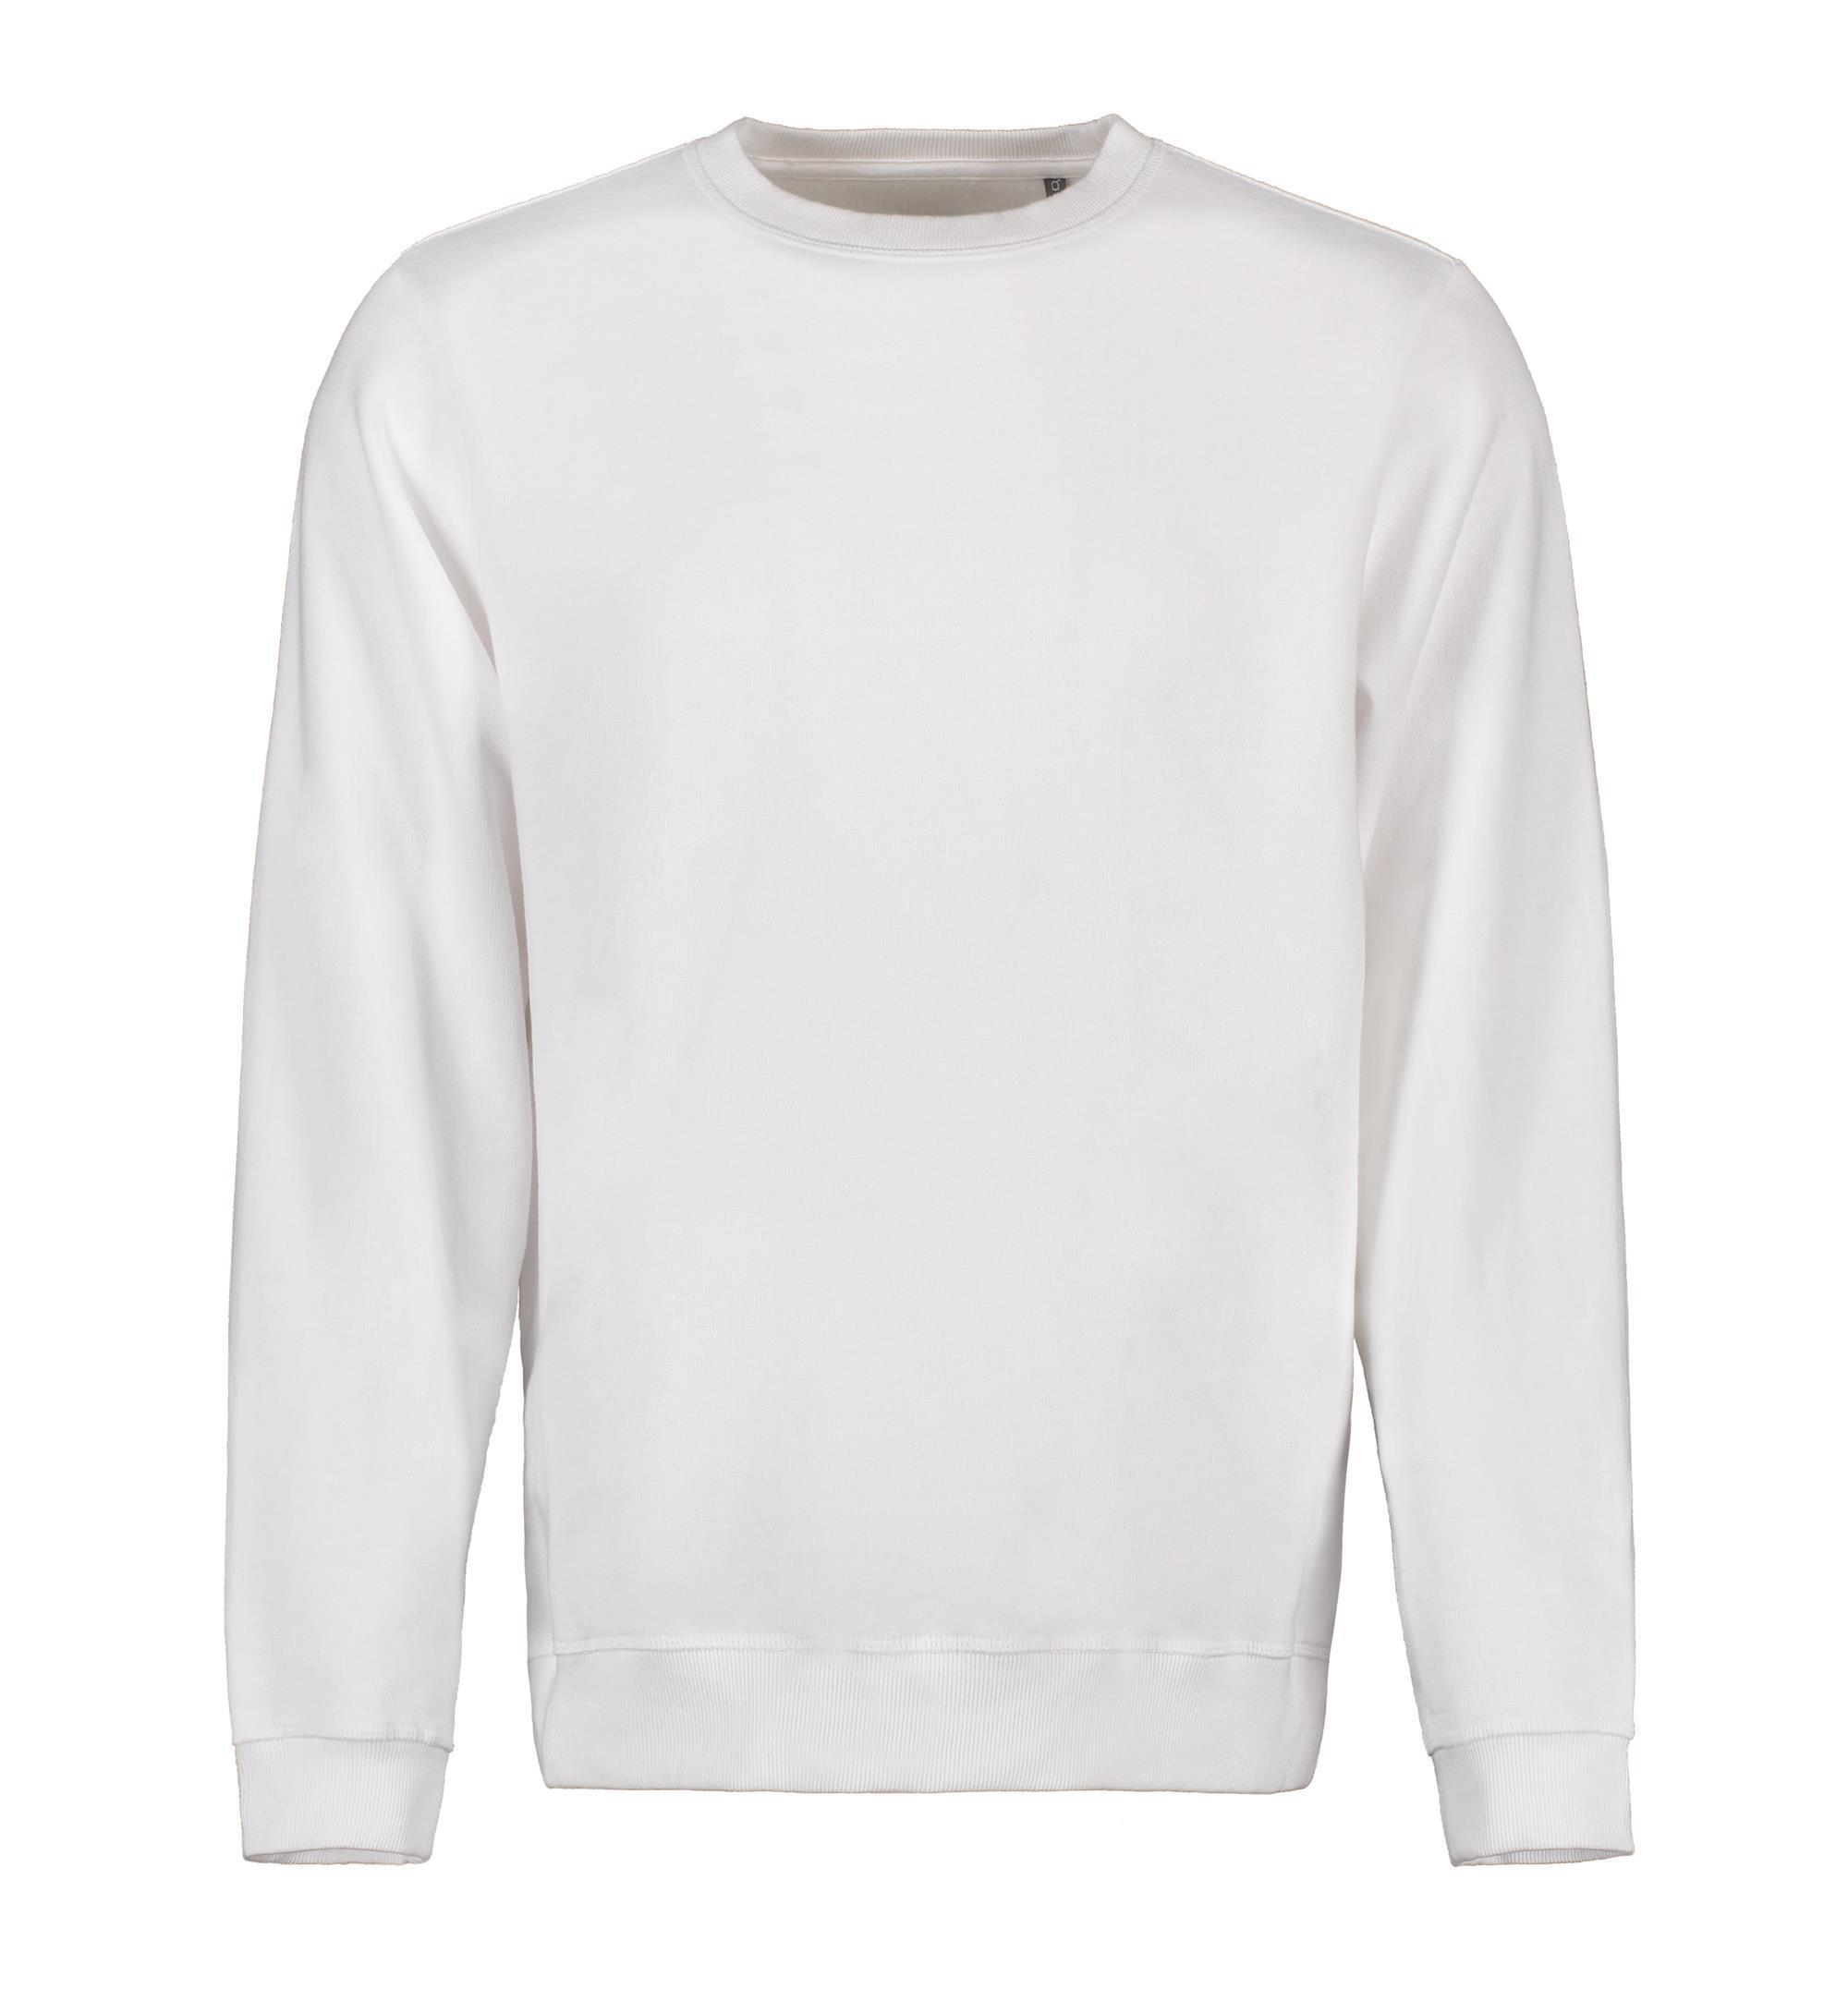 Herren Bio-Baumwoll-Sweatshirt 300 g/m² ID Identity® Weiß S